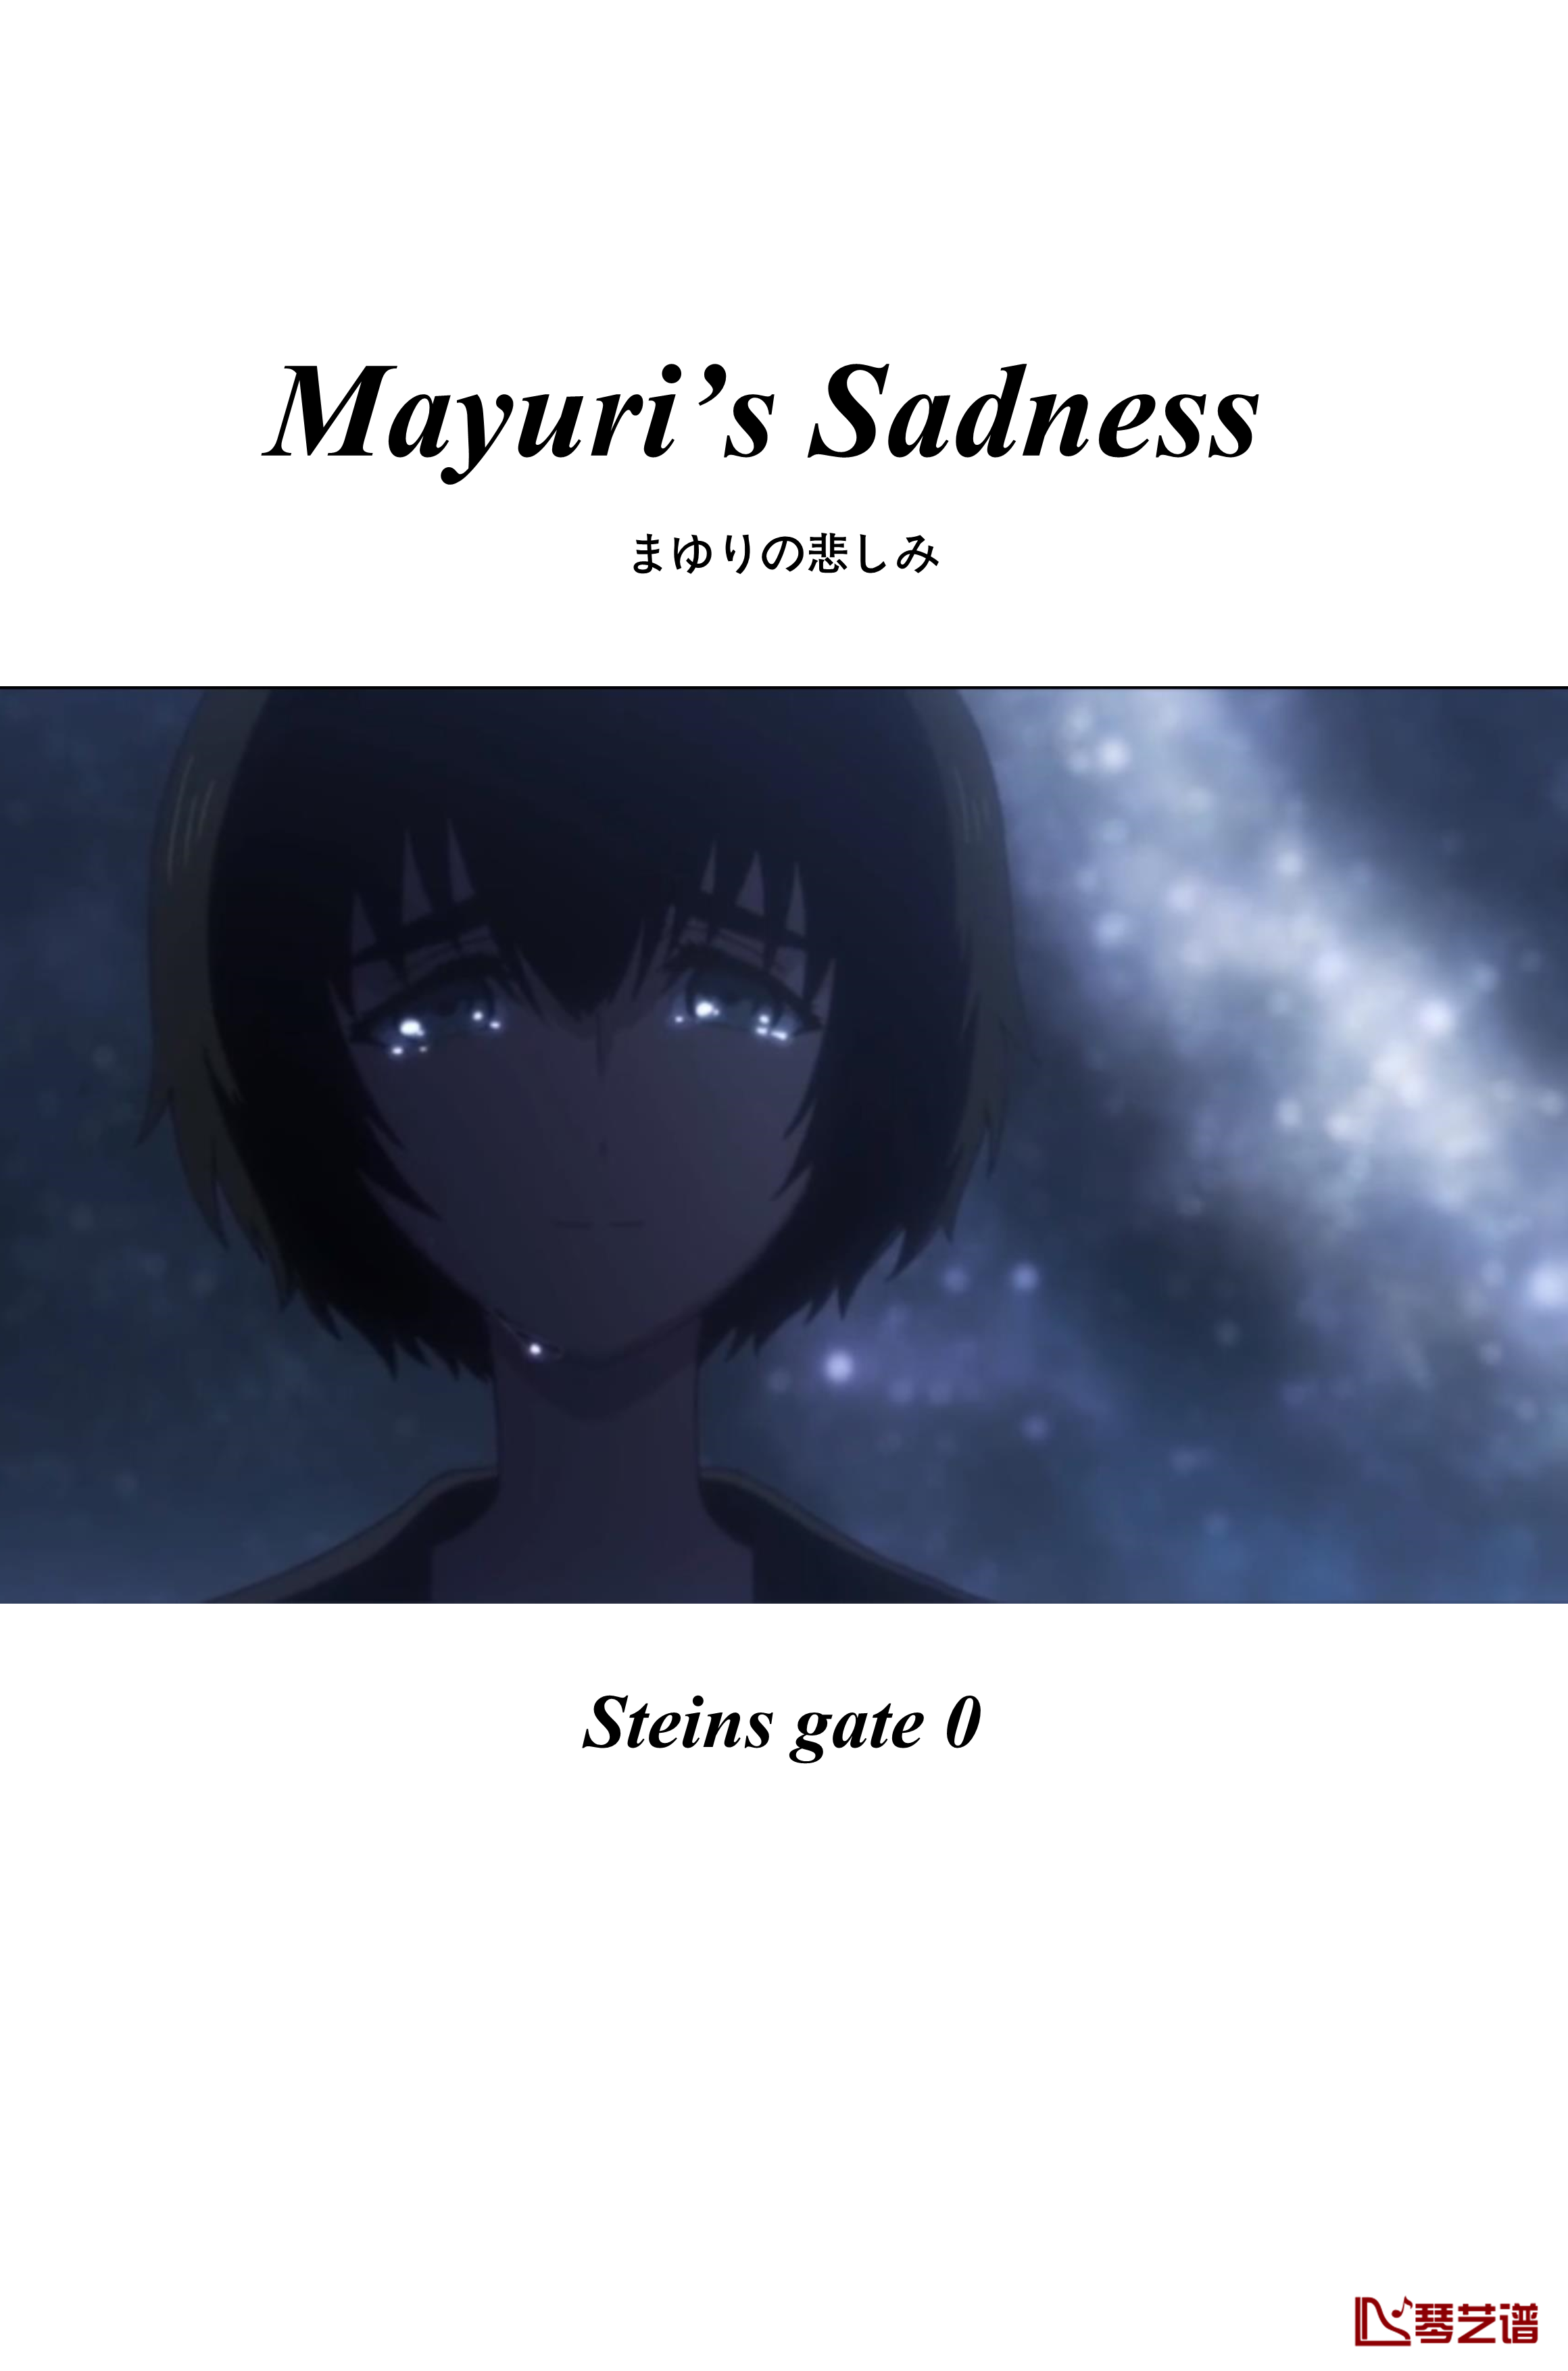 命运石之门0钢琴谱-ostまゆりの悲しみ-Mayuri’s Sadness-阿保刚